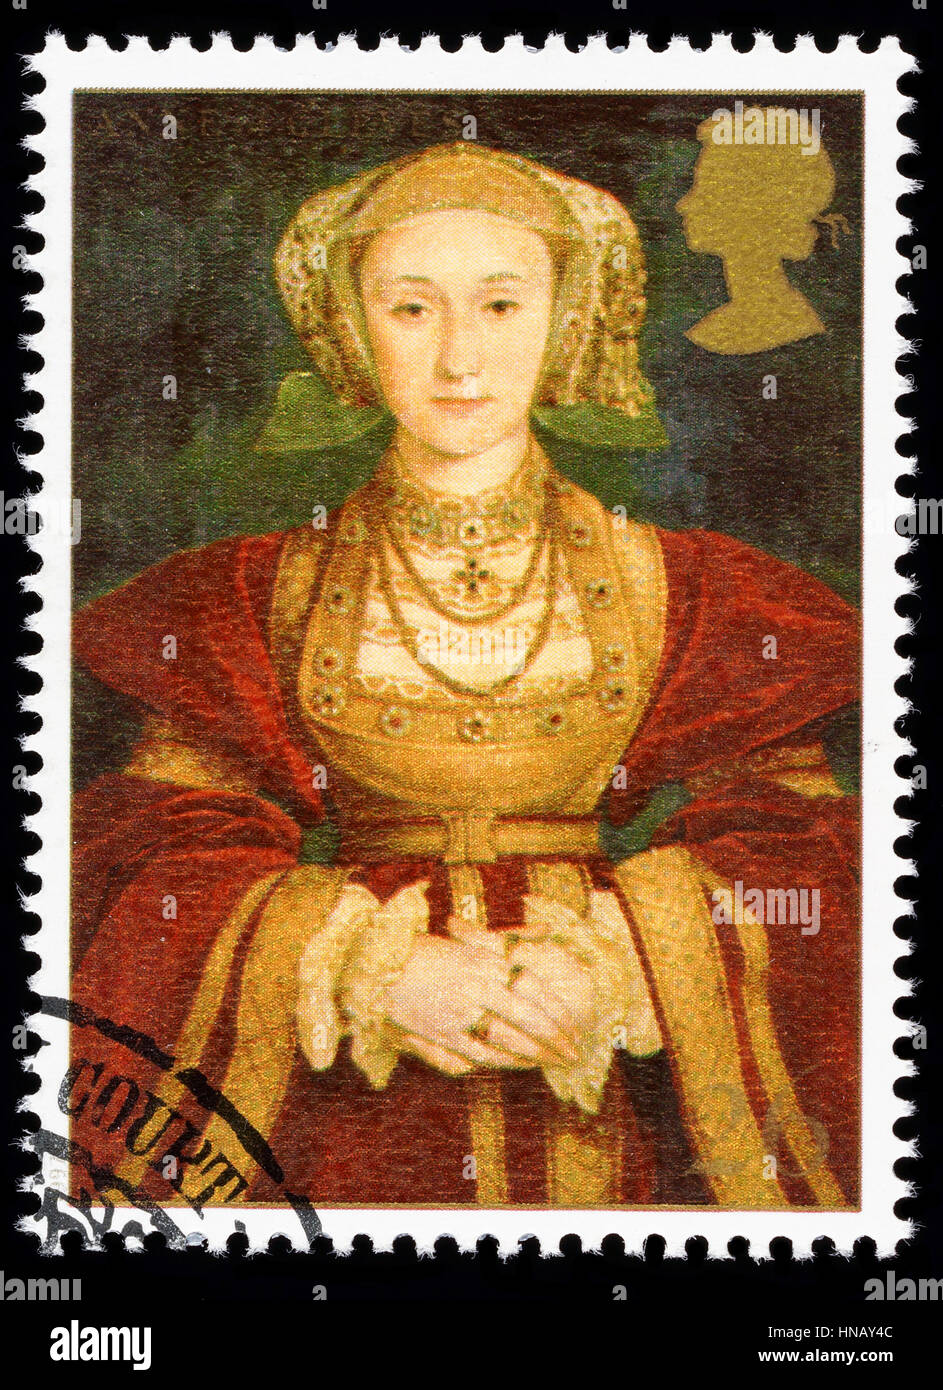 Regno Unito - circa 1997: usato francobollo stampato in Gran Bretagna per commemorare il Re Enrico VIII mostra Anne of Cleves una delle sue numerose mogli Foto Stock